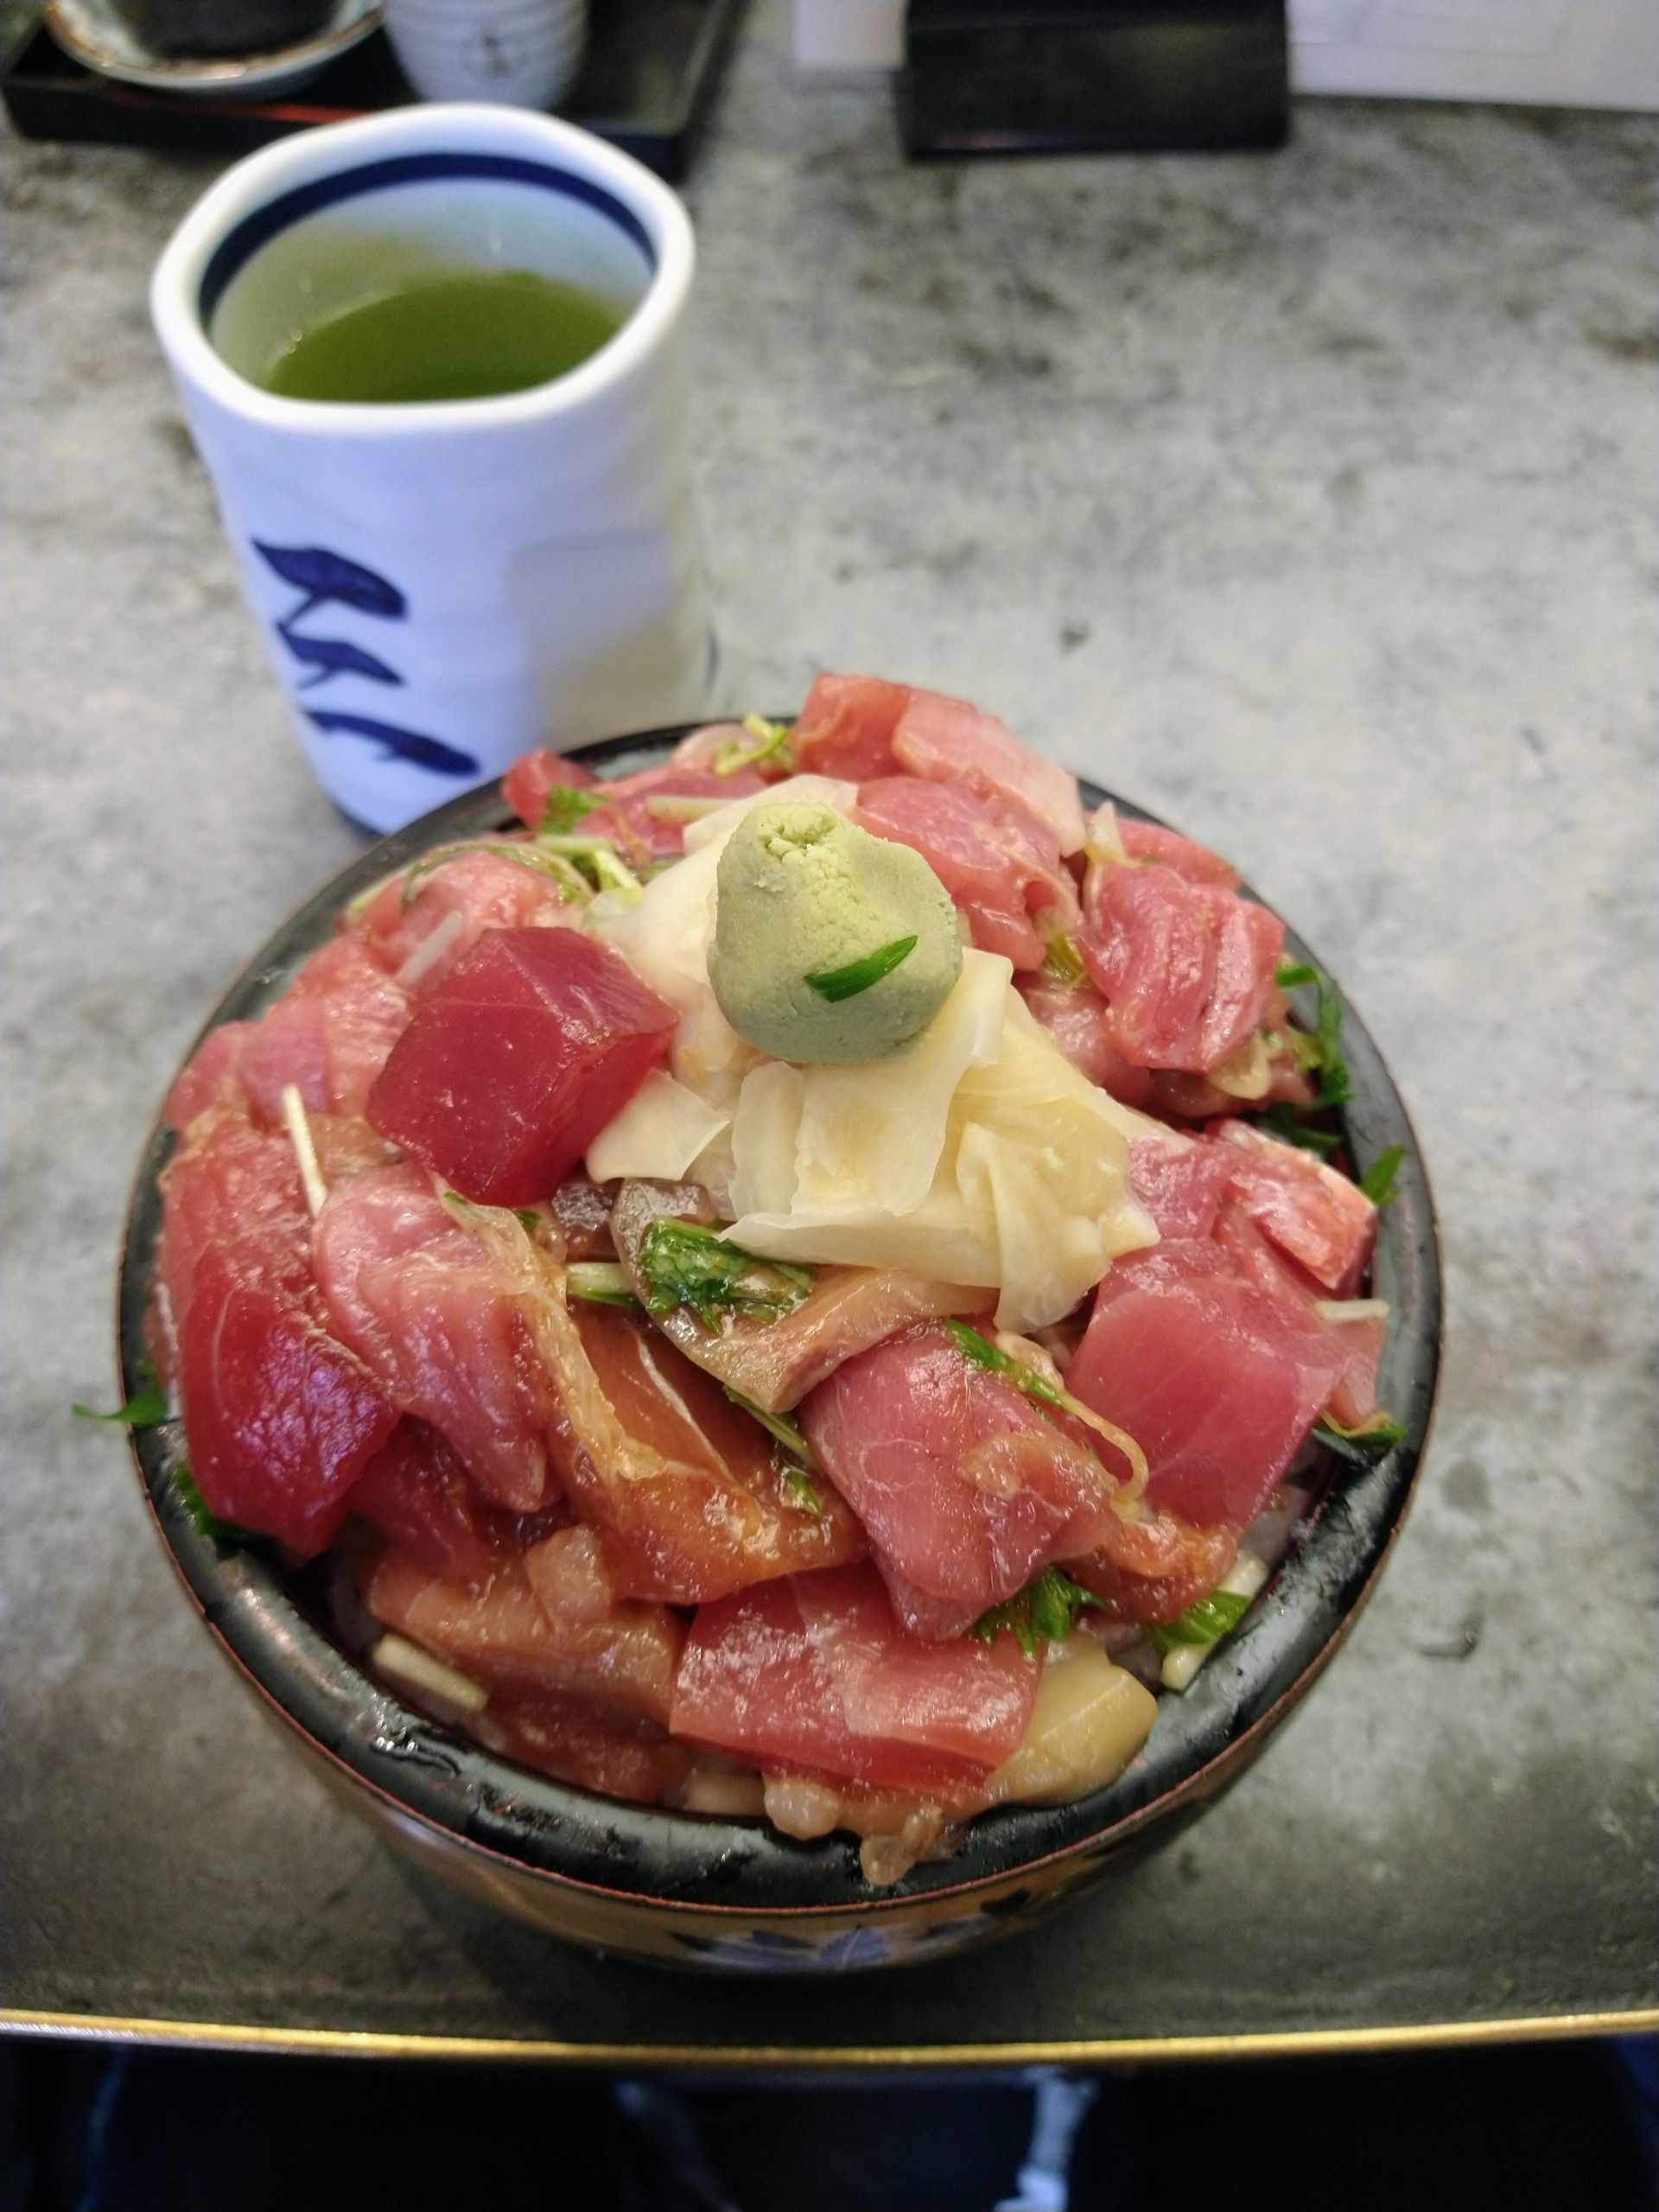 mikore-sushi-cuisine-11